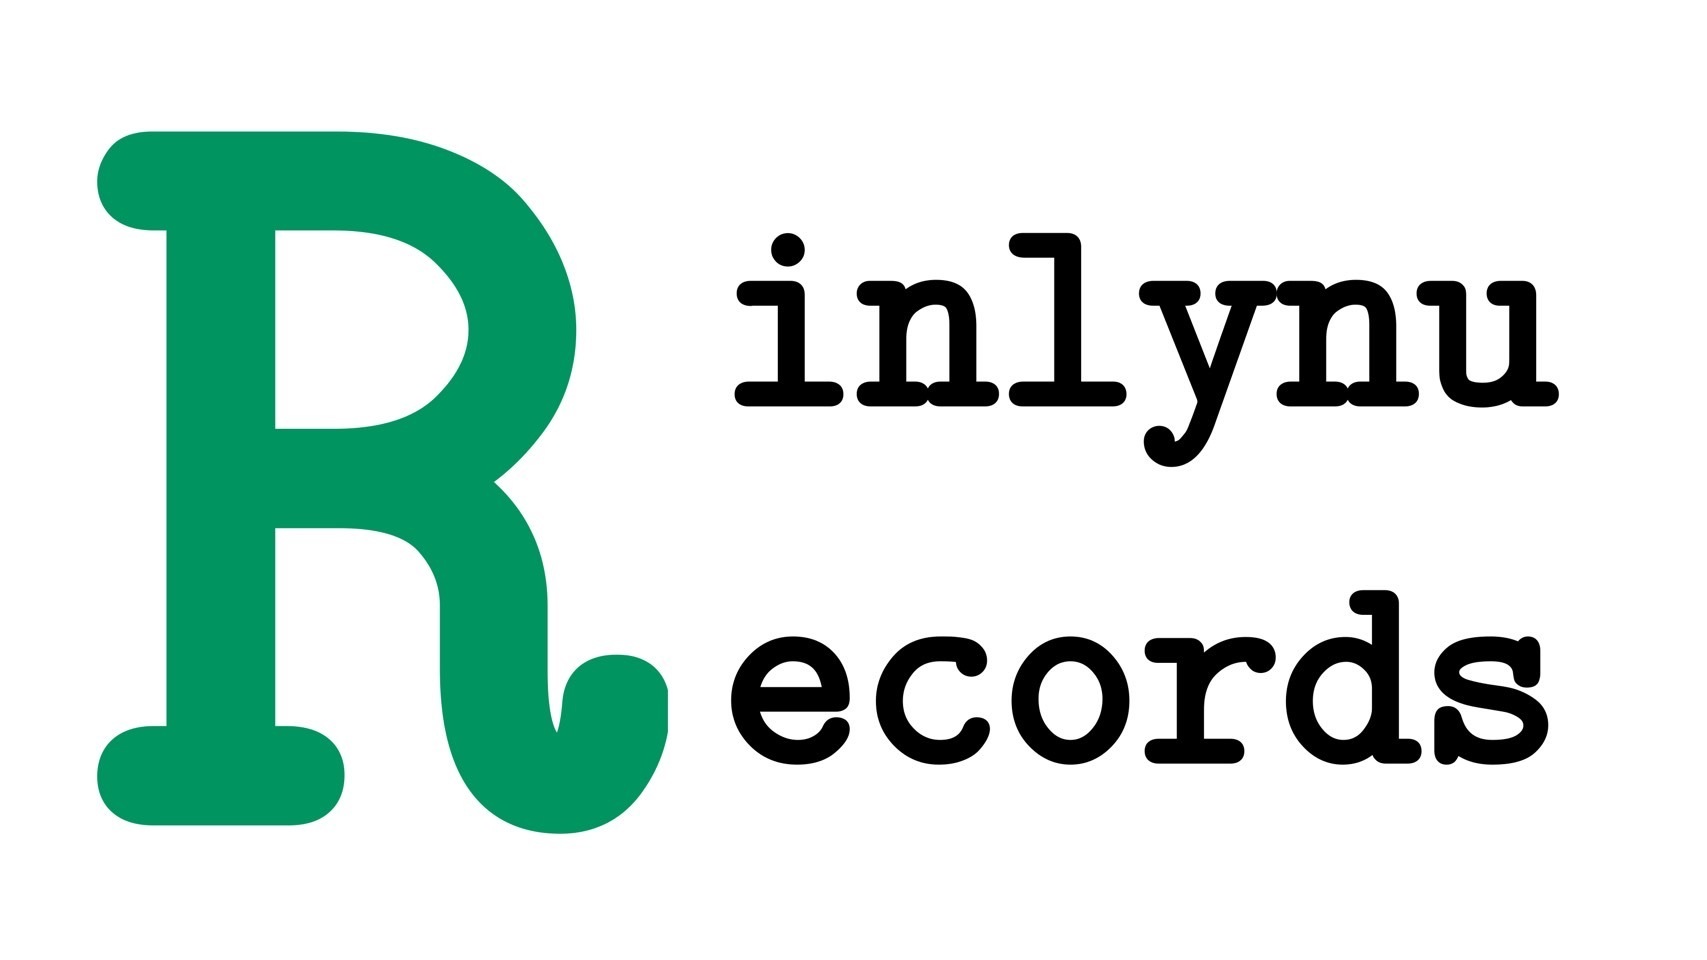 RinlynuRecords インターネット支店